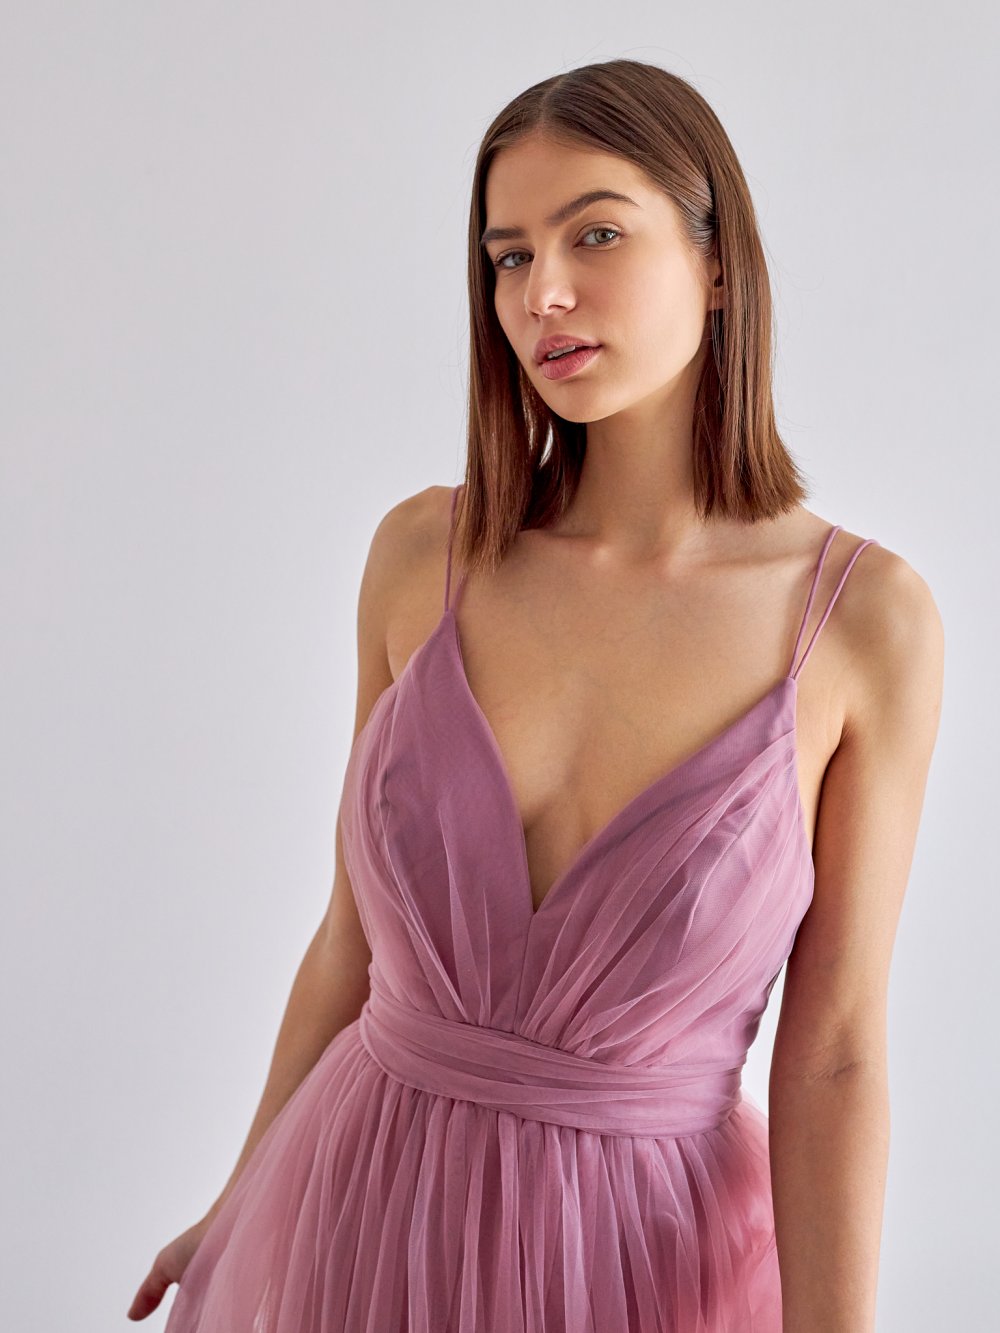 Fialovo-ružové tylové spoločenské šaty Polina